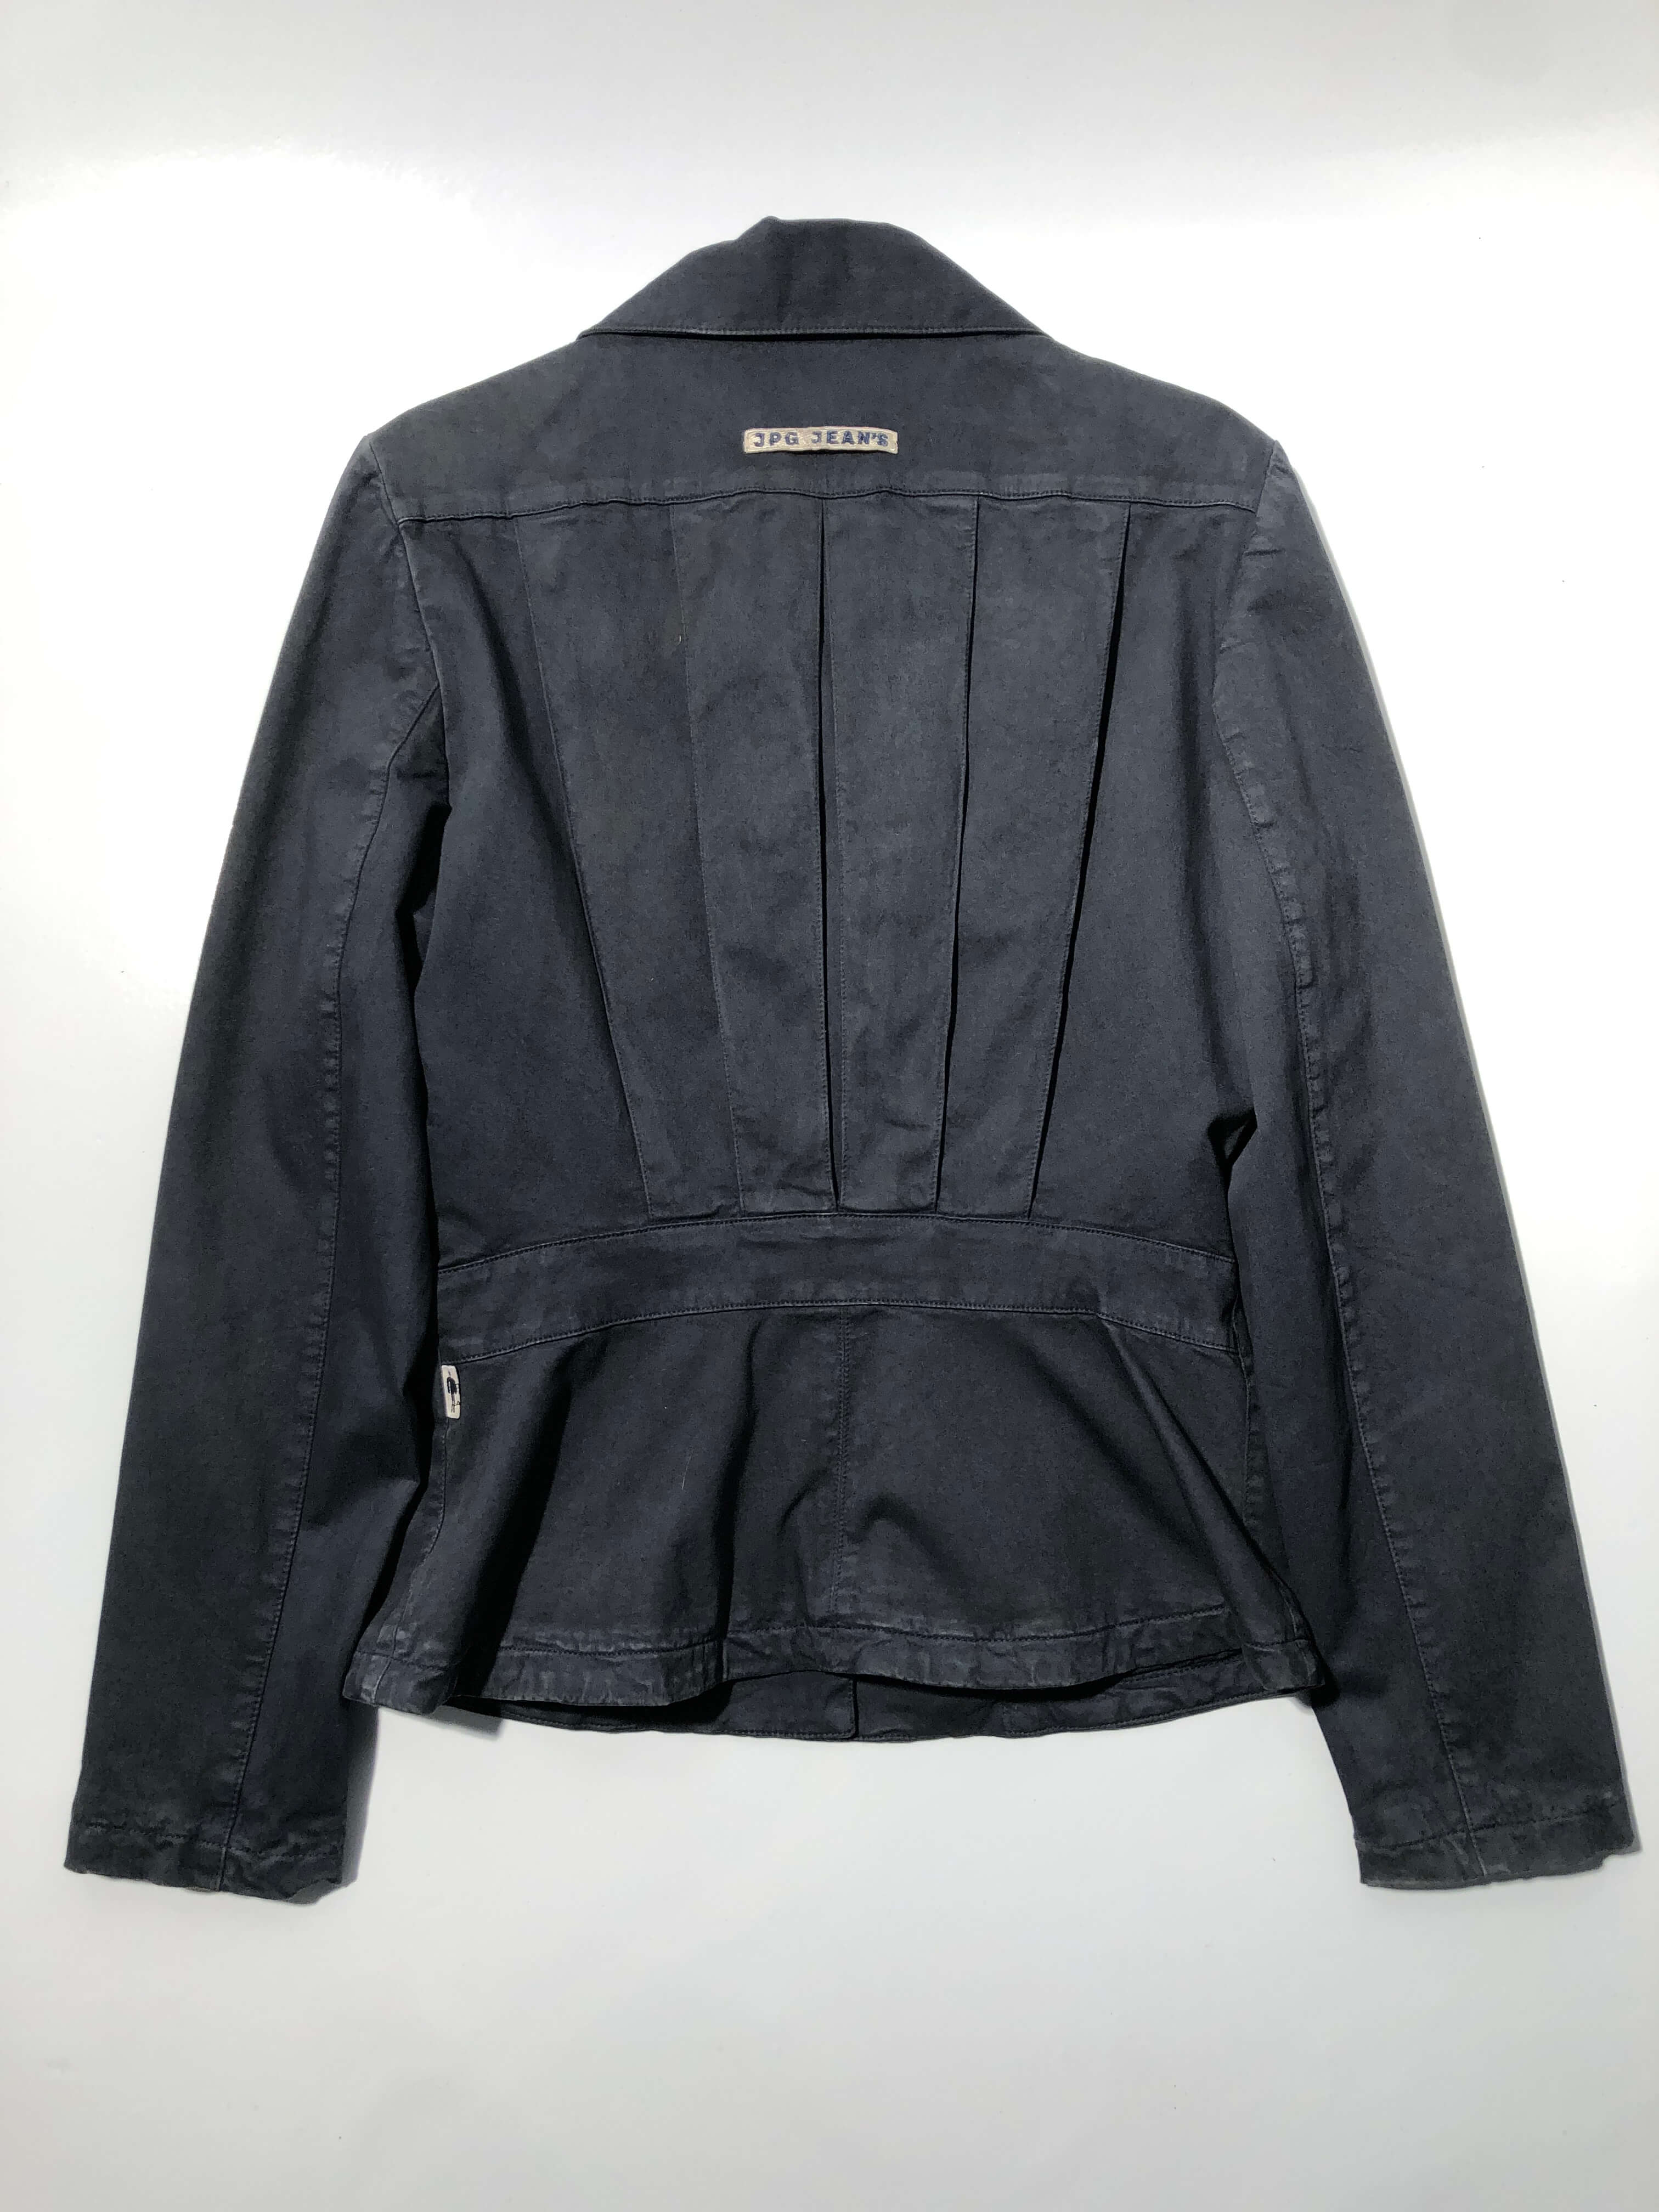 Jean Paul Gaultier Jeans jacket